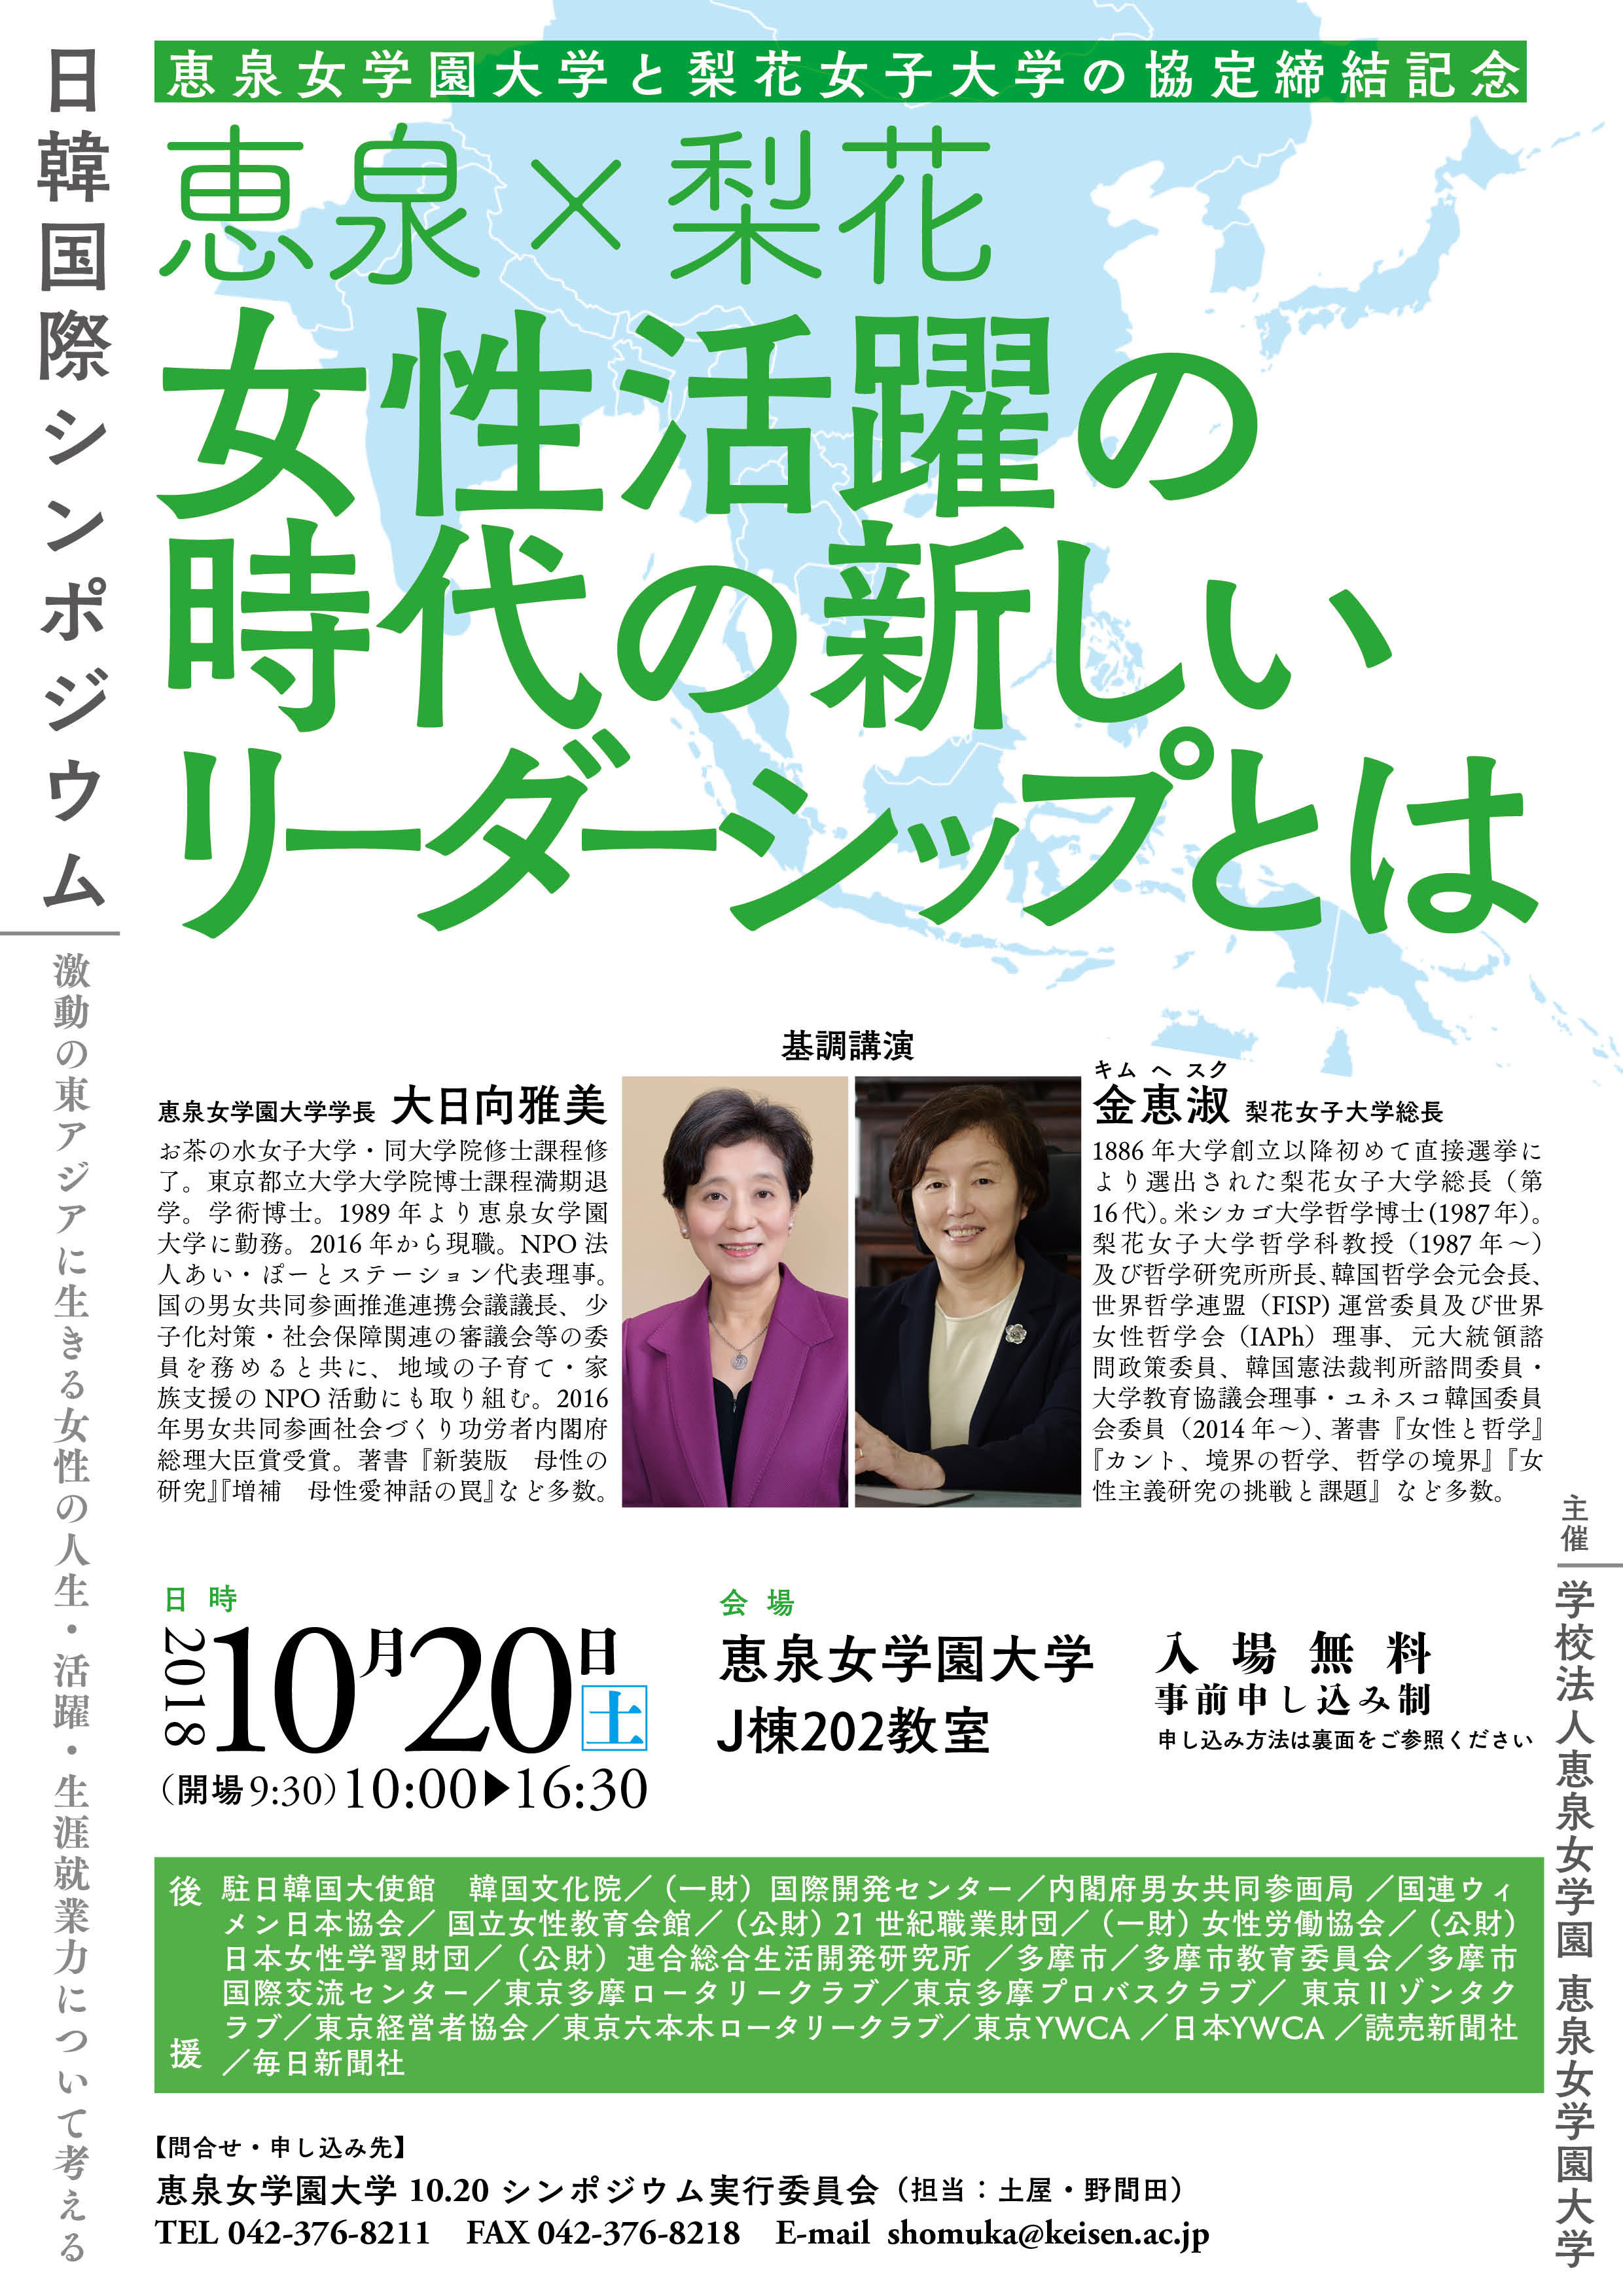 恵泉女学園大学が10月20日に韓国の梨花女子大学と協定を締結、記者会見を開催 -- 同日には記念シンポジウム「恵泉×梨花　女性活躍時代の新しいリーダーシップとは」も